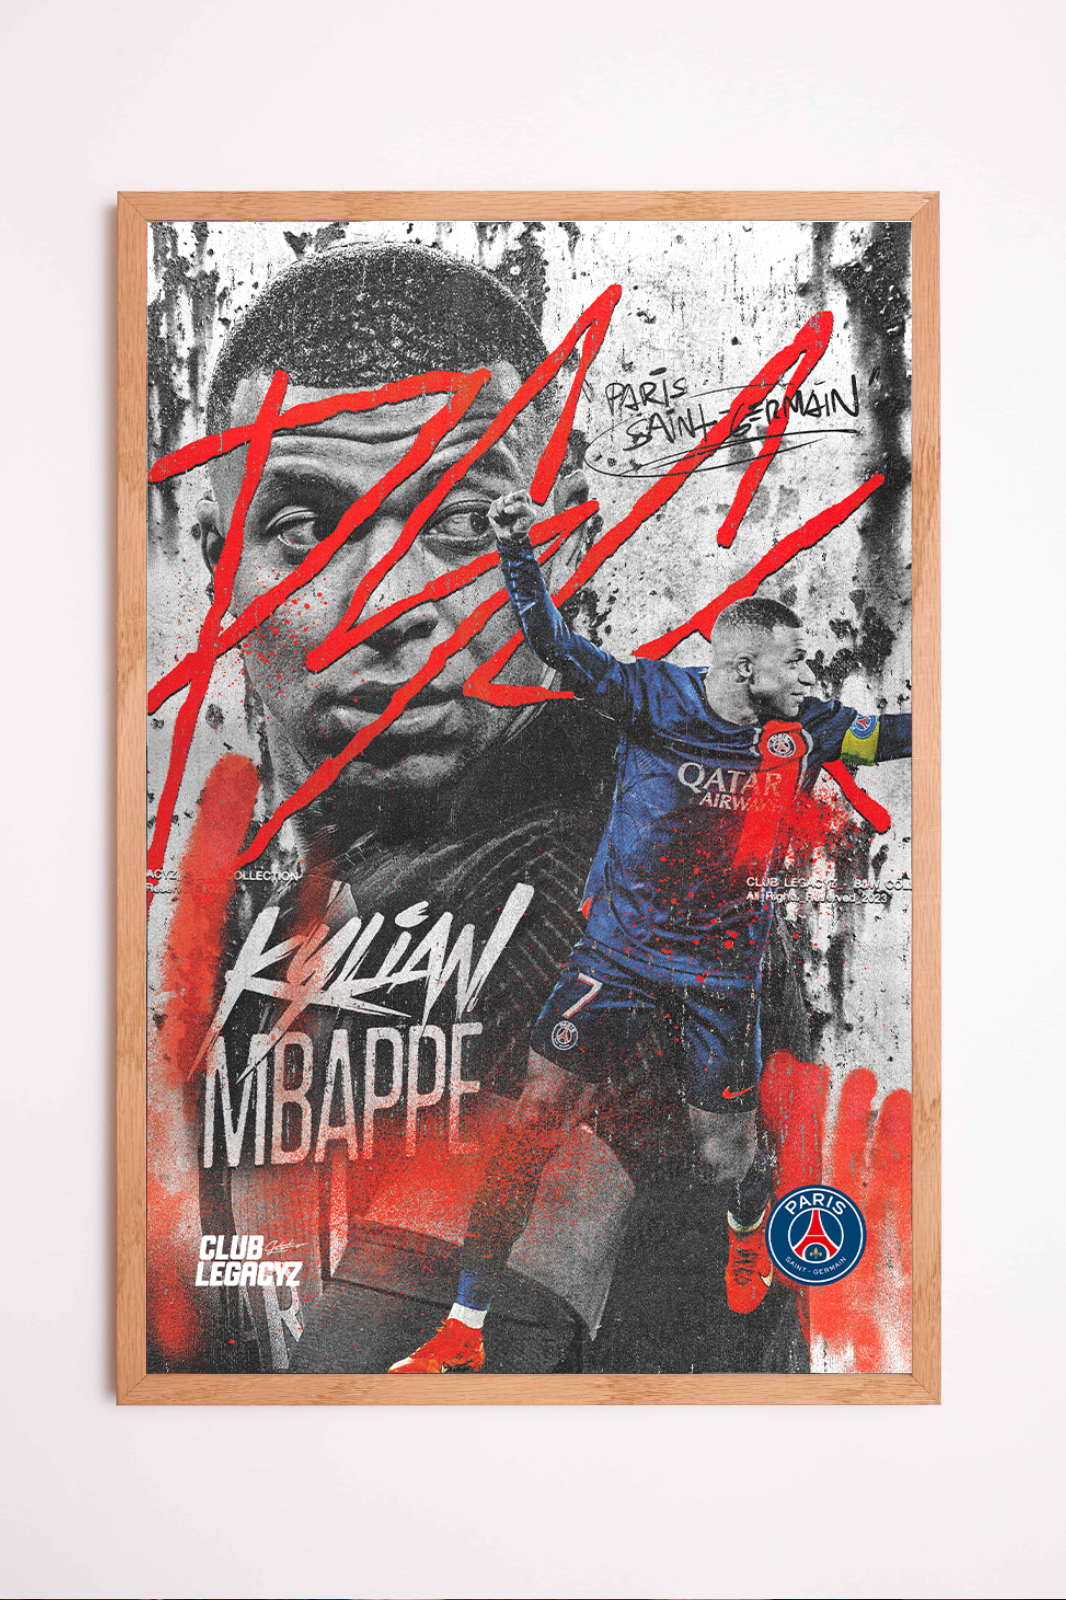 Paris Saint-Germain - Kylian Mbappé Black & White Poster limited to 100